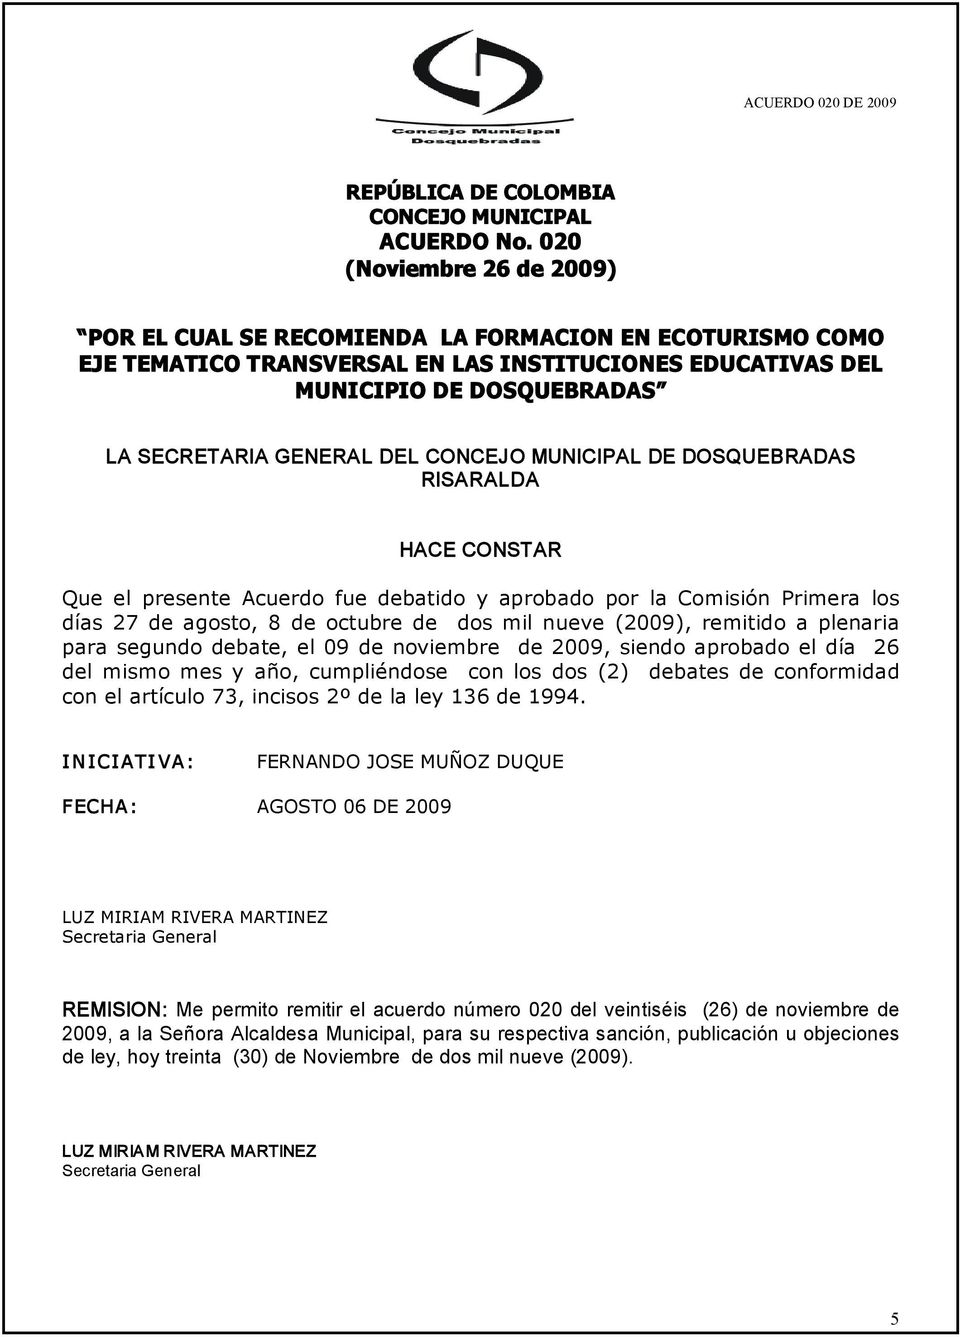 CONCEJO MUNICIPAL DE DOSQUEBRADAS RISARALDA HACE CONSTAR Que el presente Acuerdo fue debatido y aprobado por la Comisión Primera los días 27 de agosto, 8 de octubre de dos mil nueve (2009), remitido